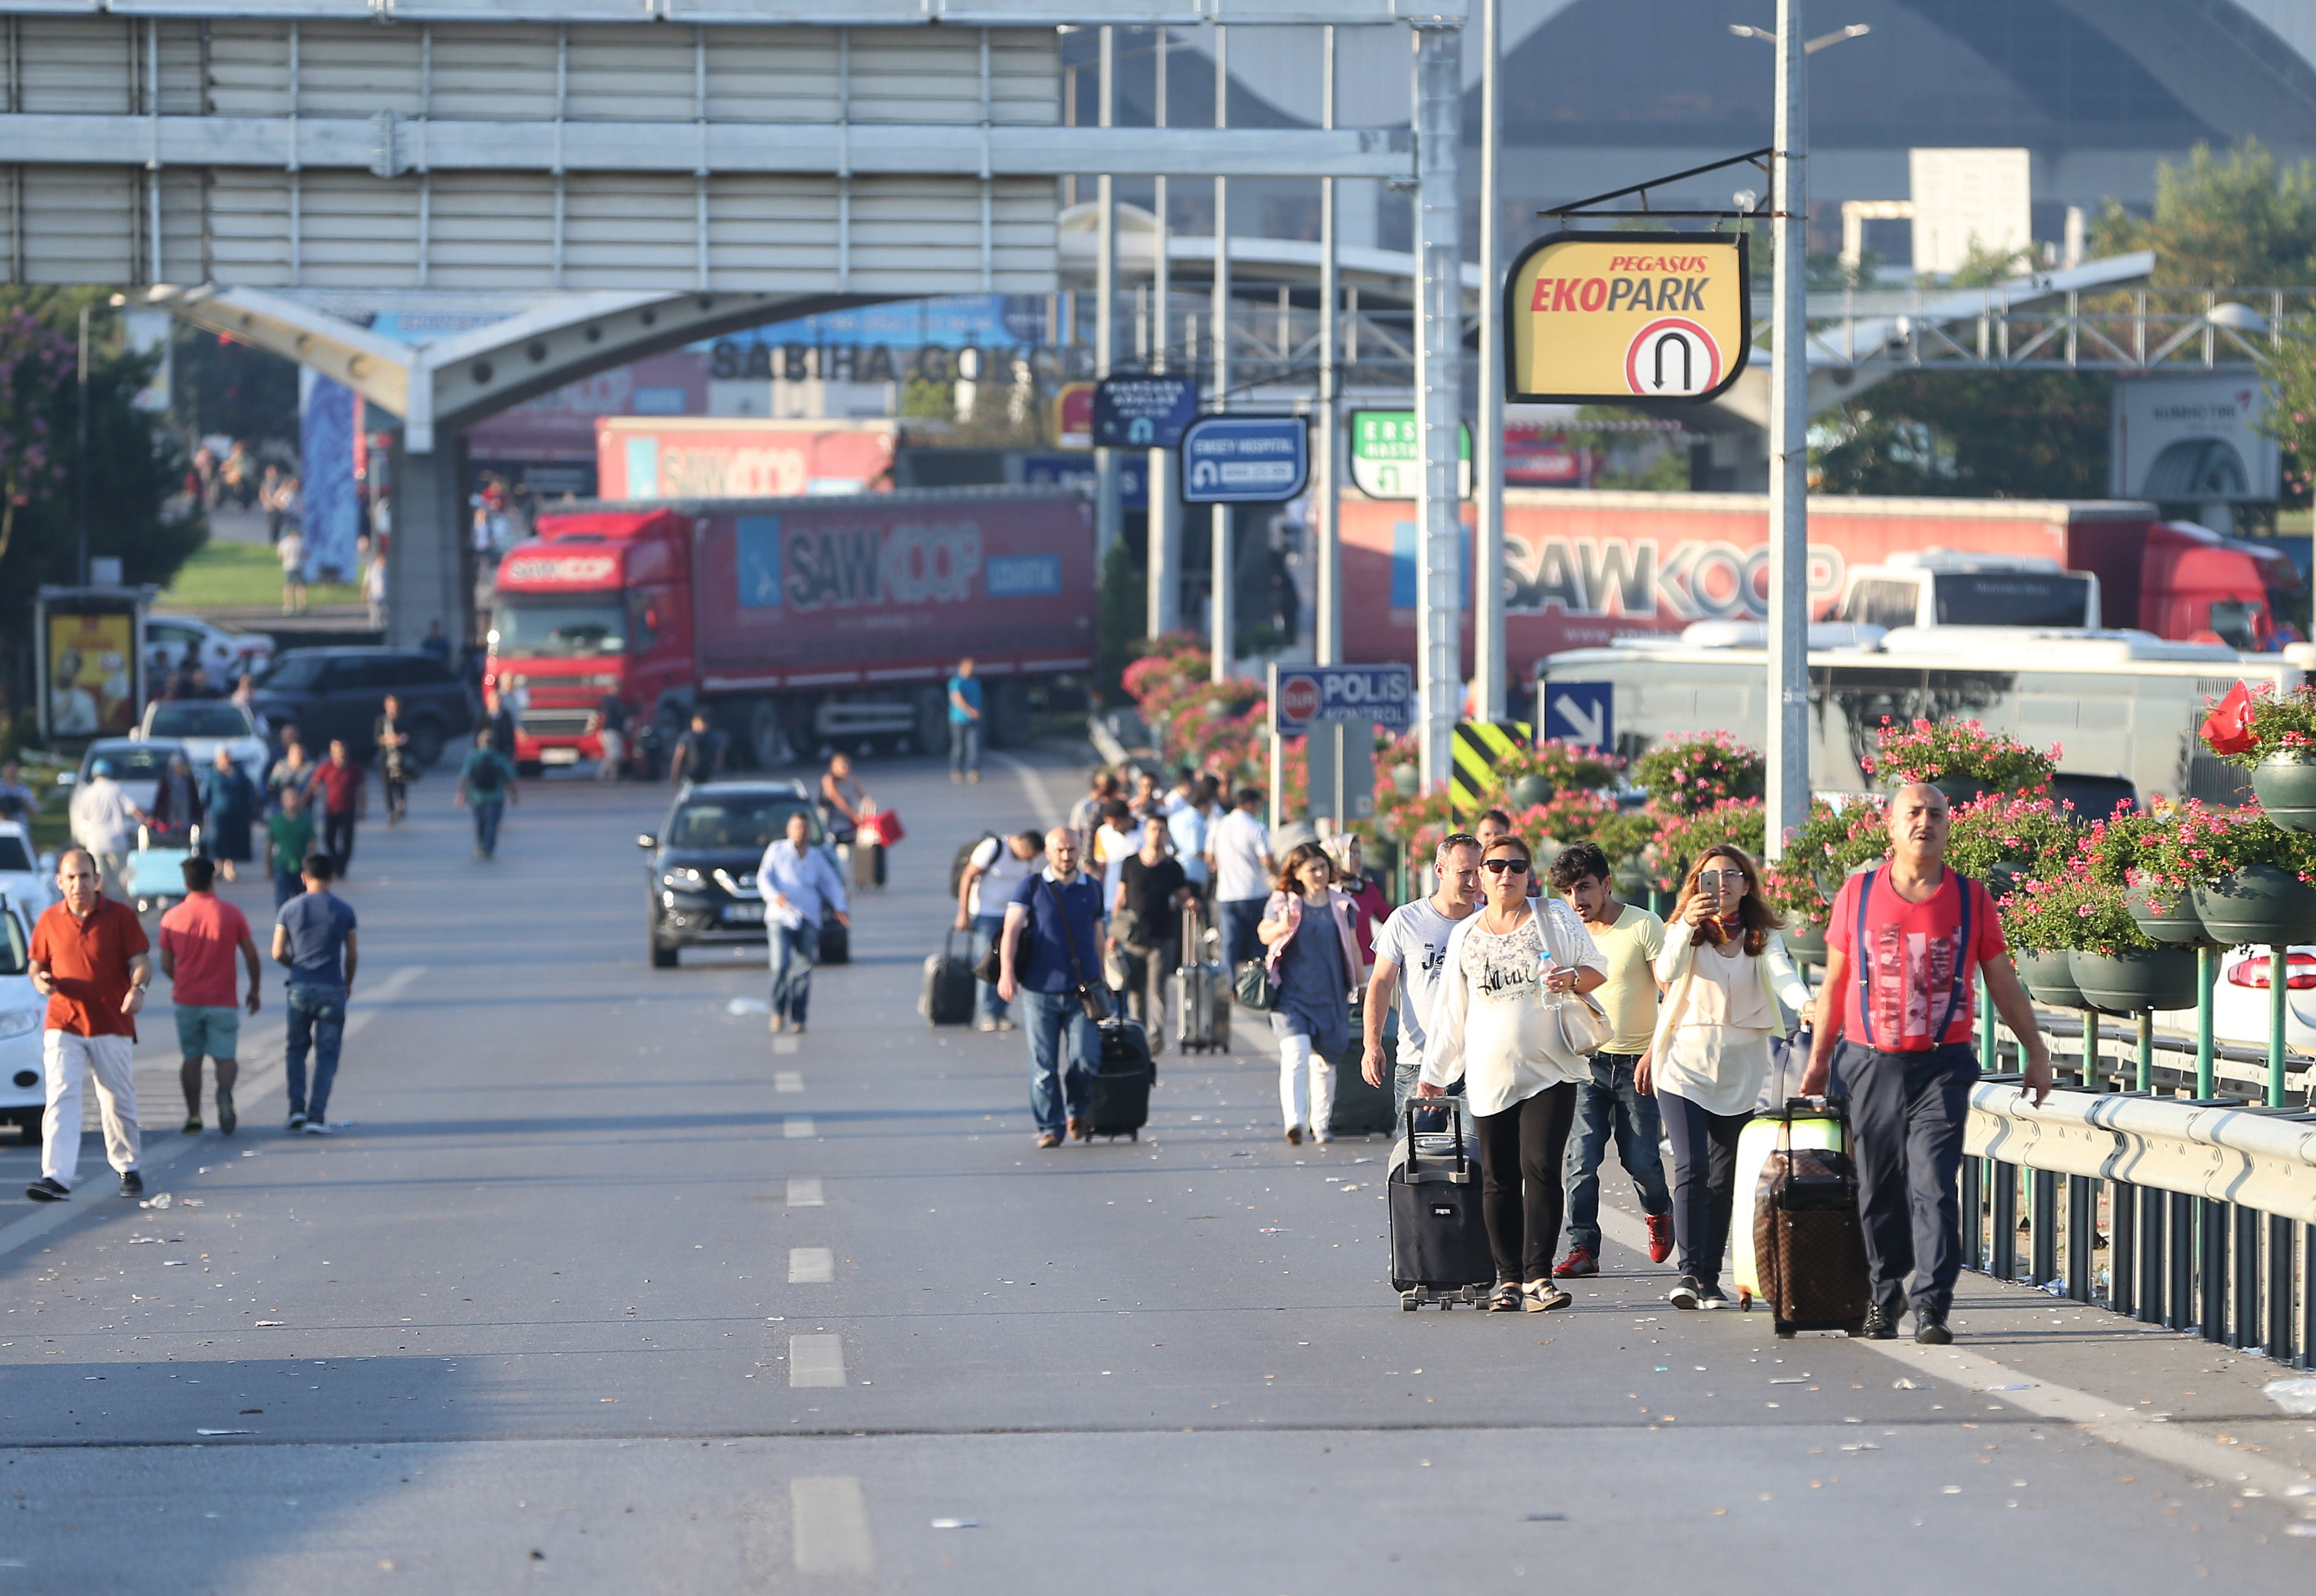 بدأ المواطنون في الابتعاد عن المنطقة حاملين حقائبهم نتيجة إلغاء رحلات الطيران من المطار.